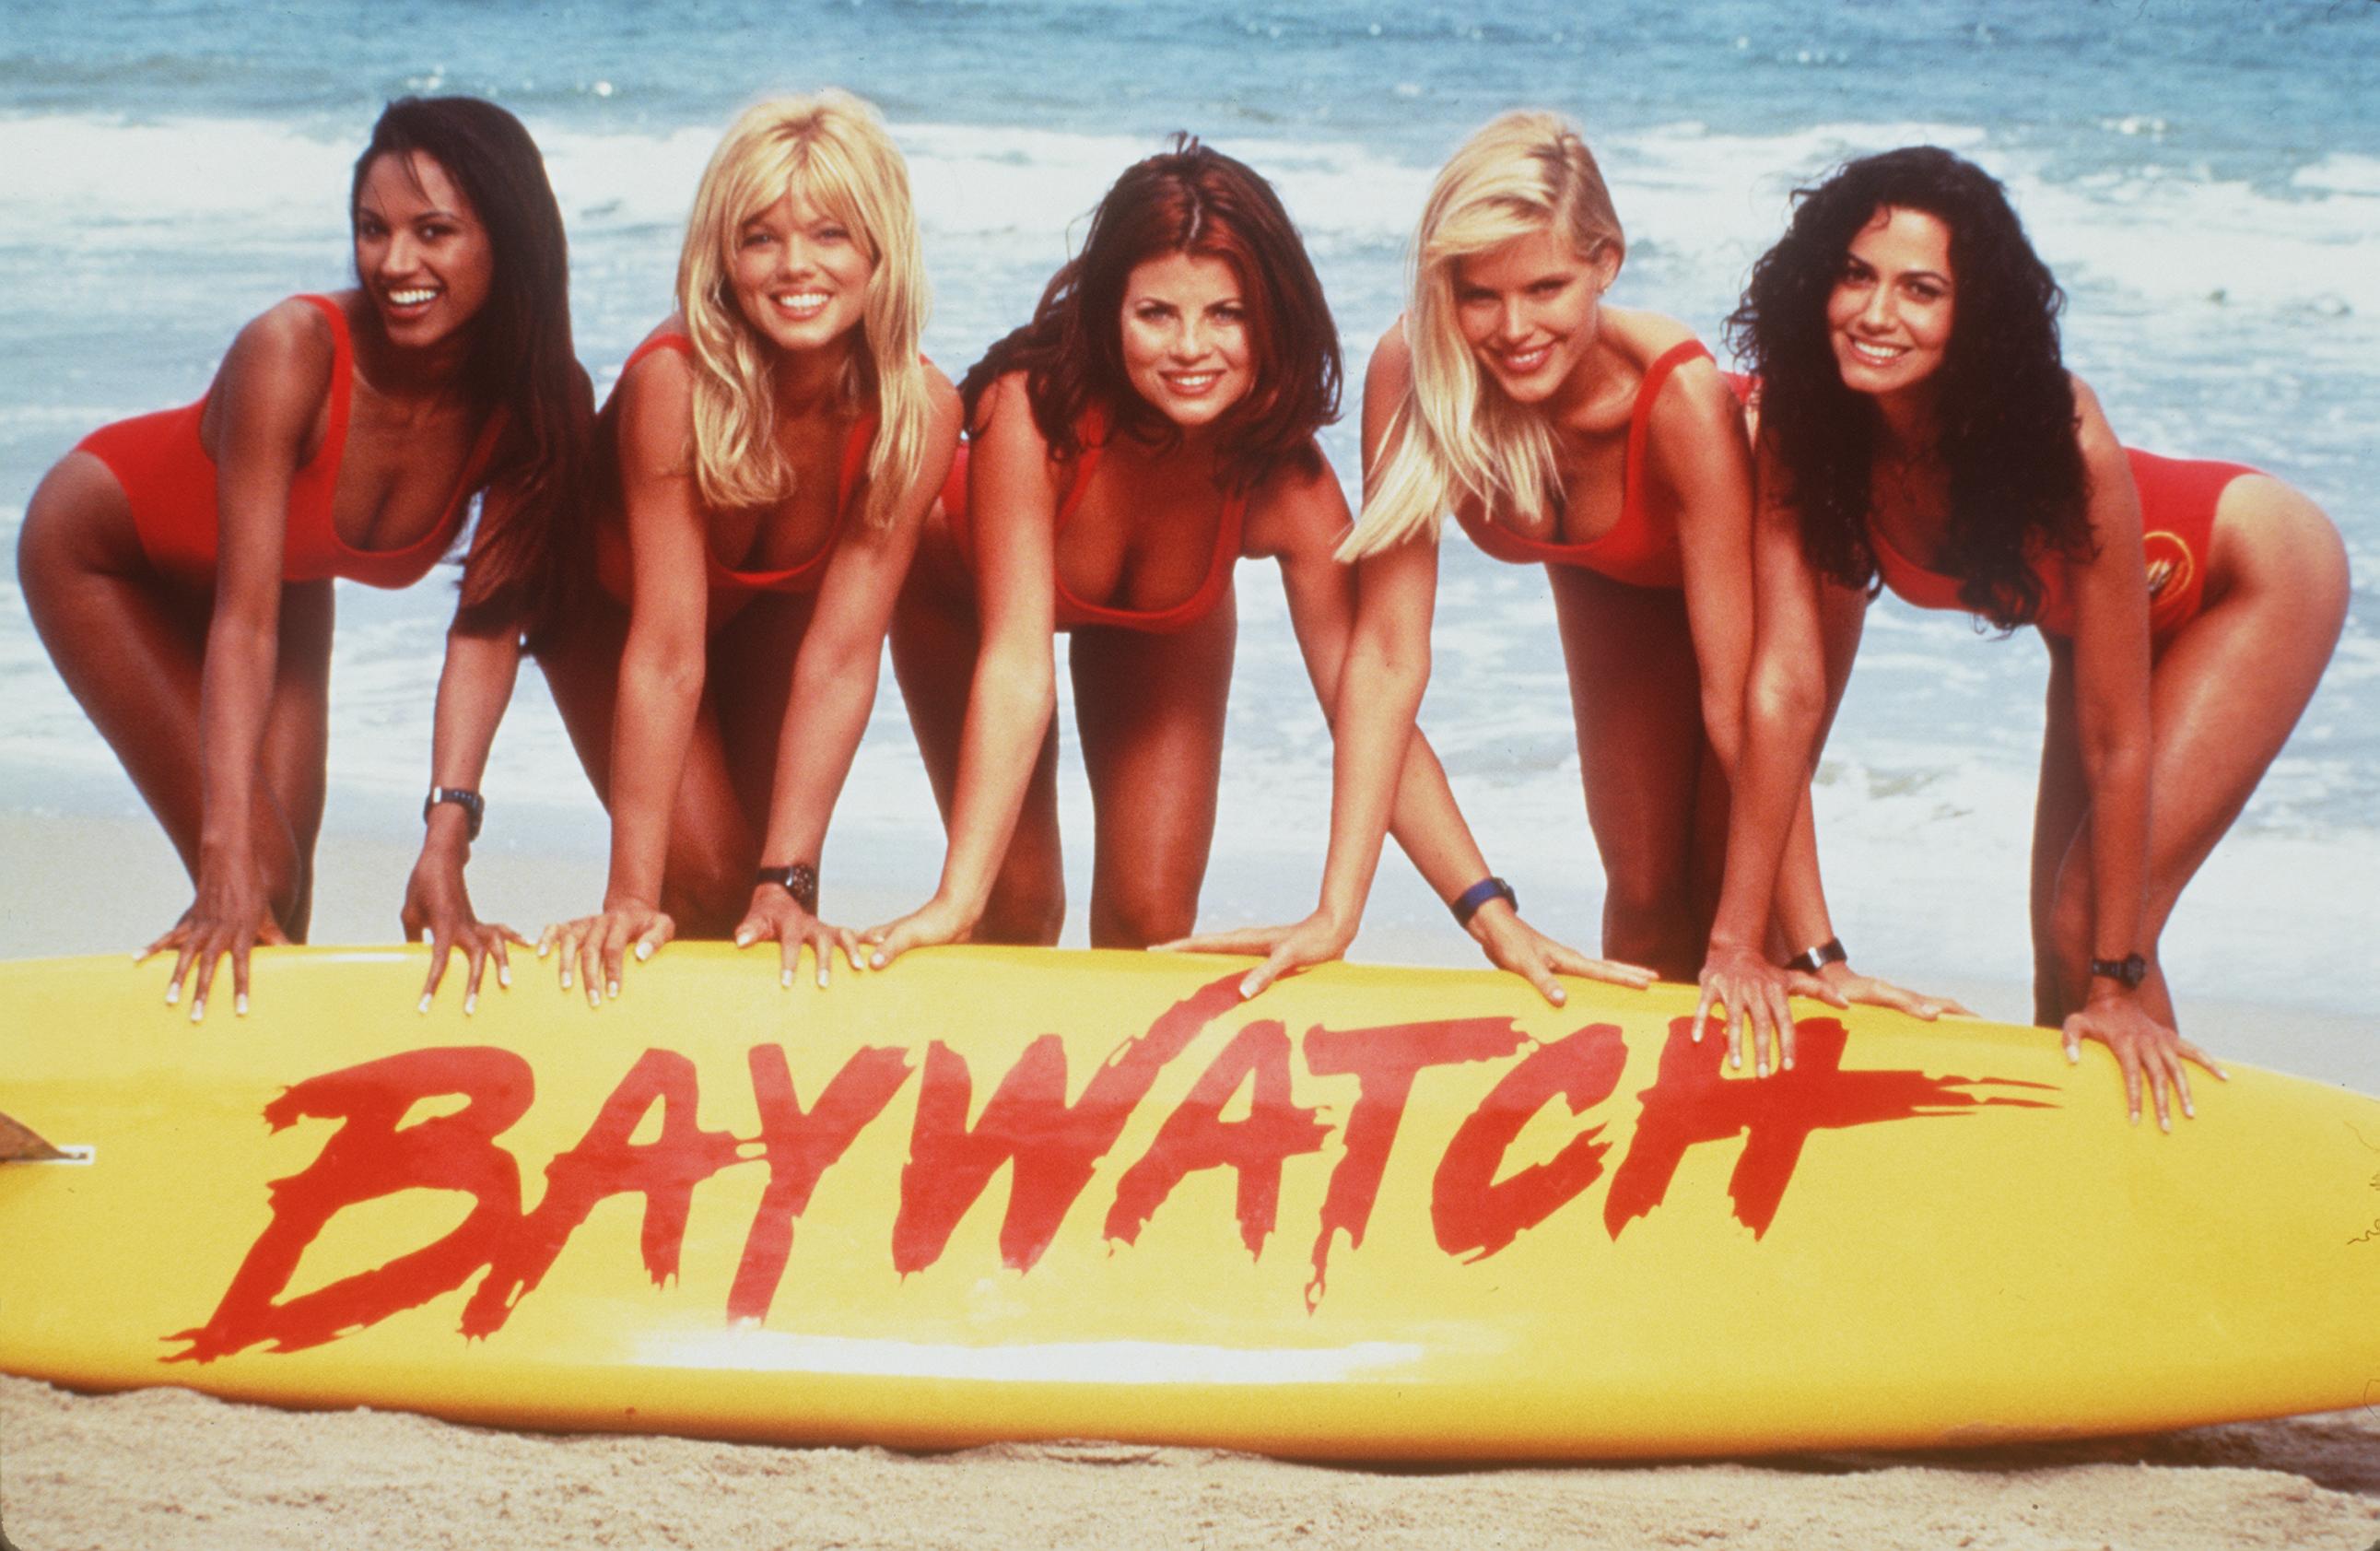 De gauche à droite : Traci Bingham, Donna D'Errico, Yasmine Bleeth, Gena Lee Nolin et Nancy Valen sur le plateau de tournage d'"Alerte à Malibu", 1999 | Source : Getty Images